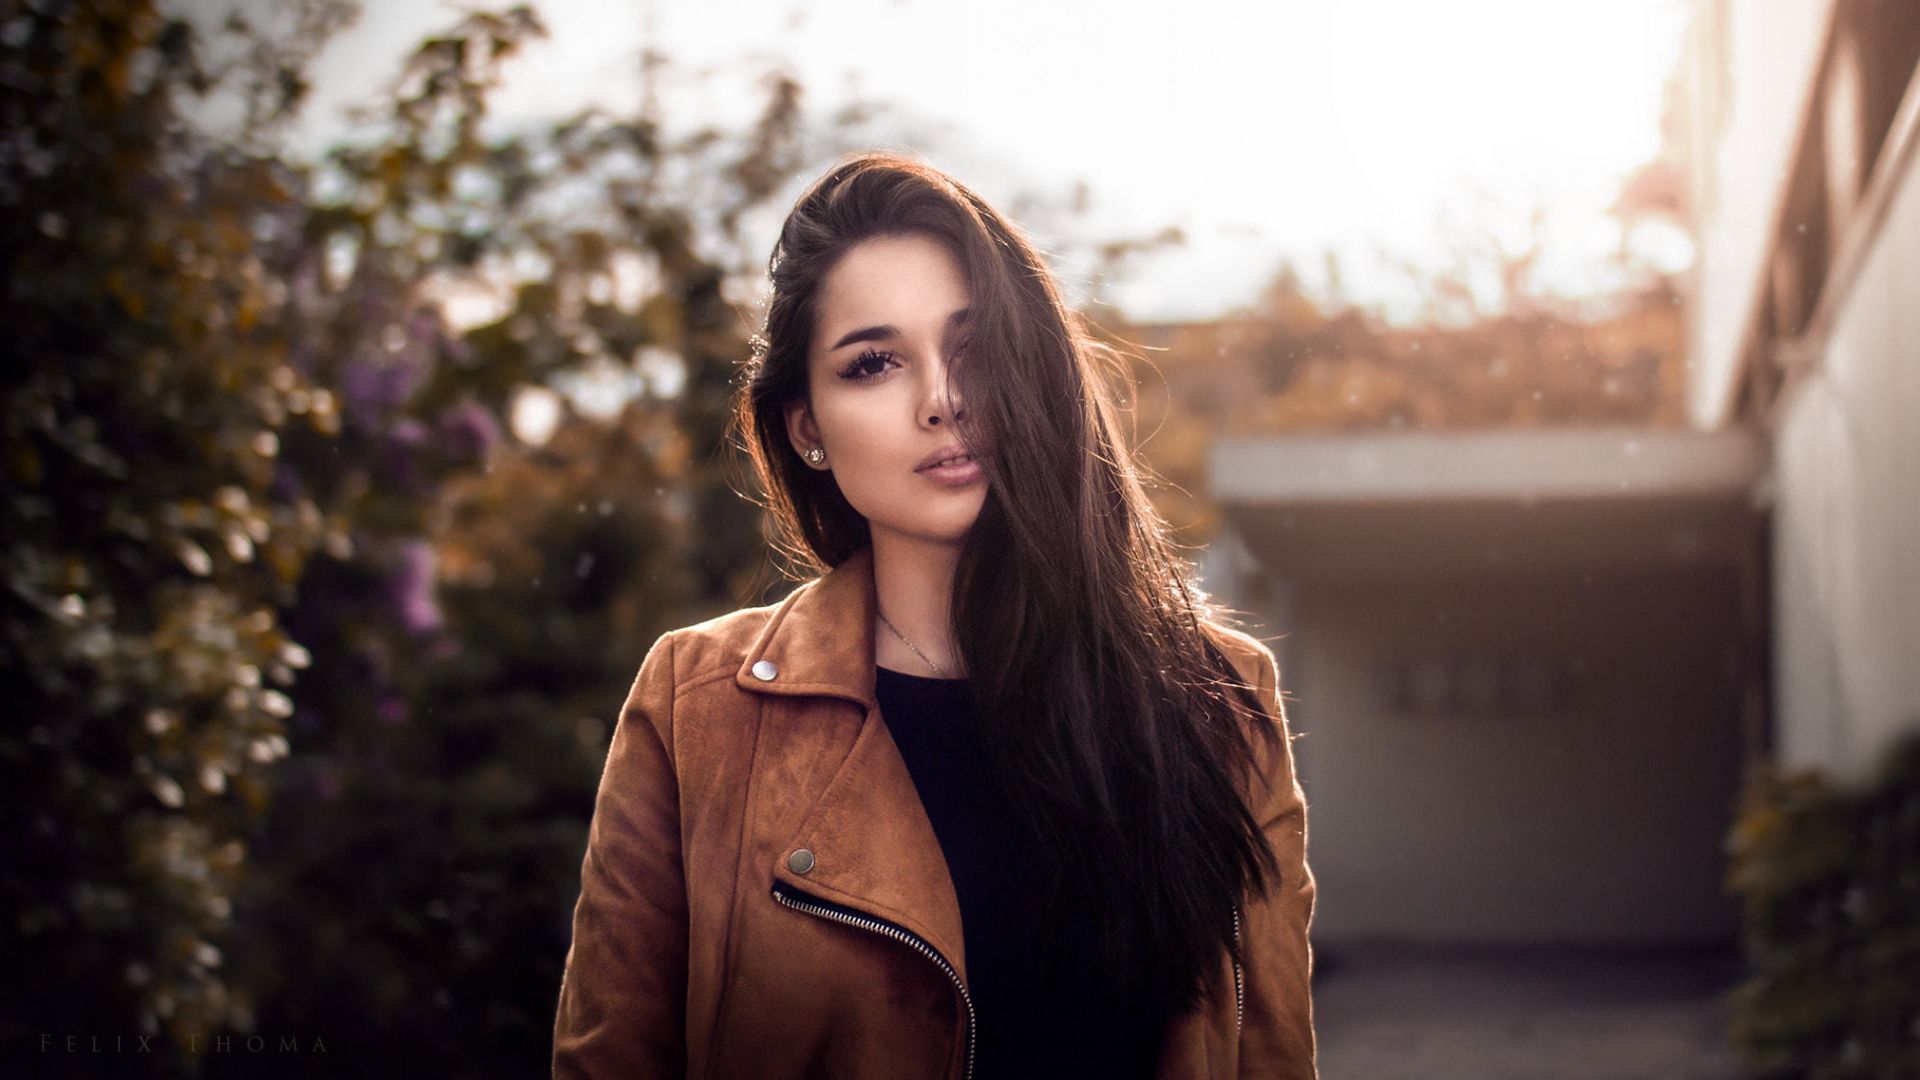 Wallpaper Blur, outdoor, girl model, jacket